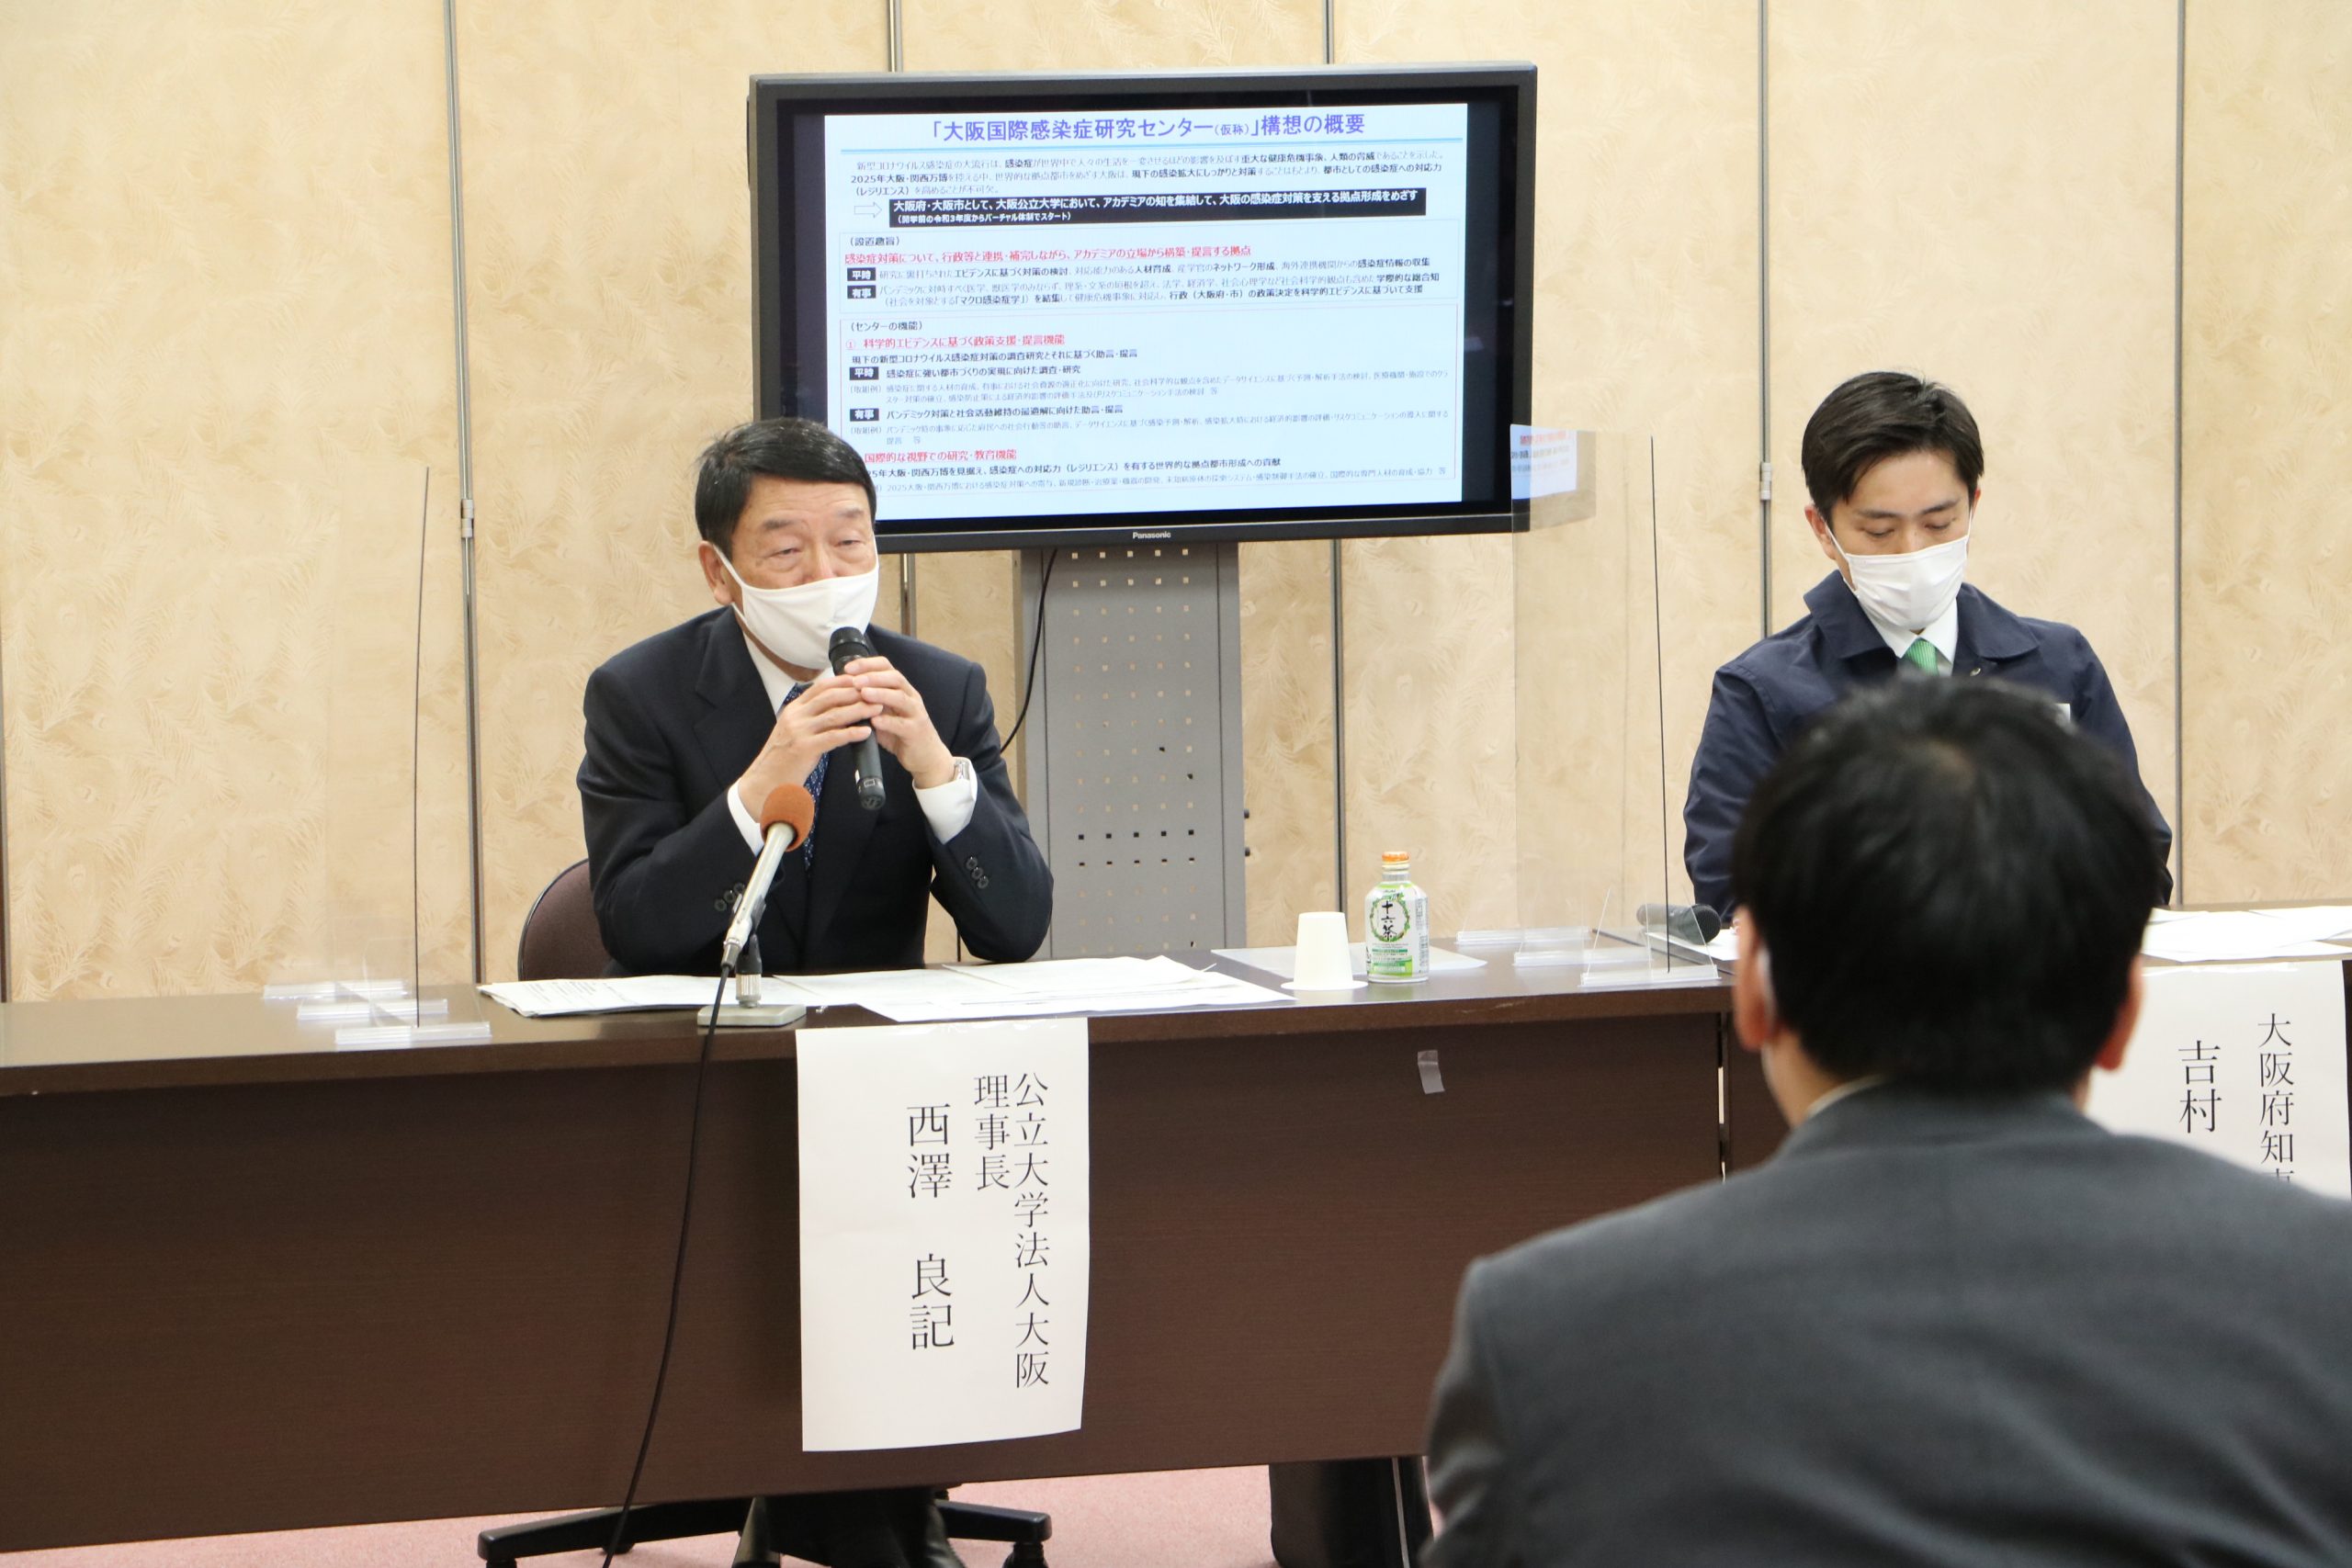 吉村大阪府知事、大阪市長、西澤理事長の三者による会見